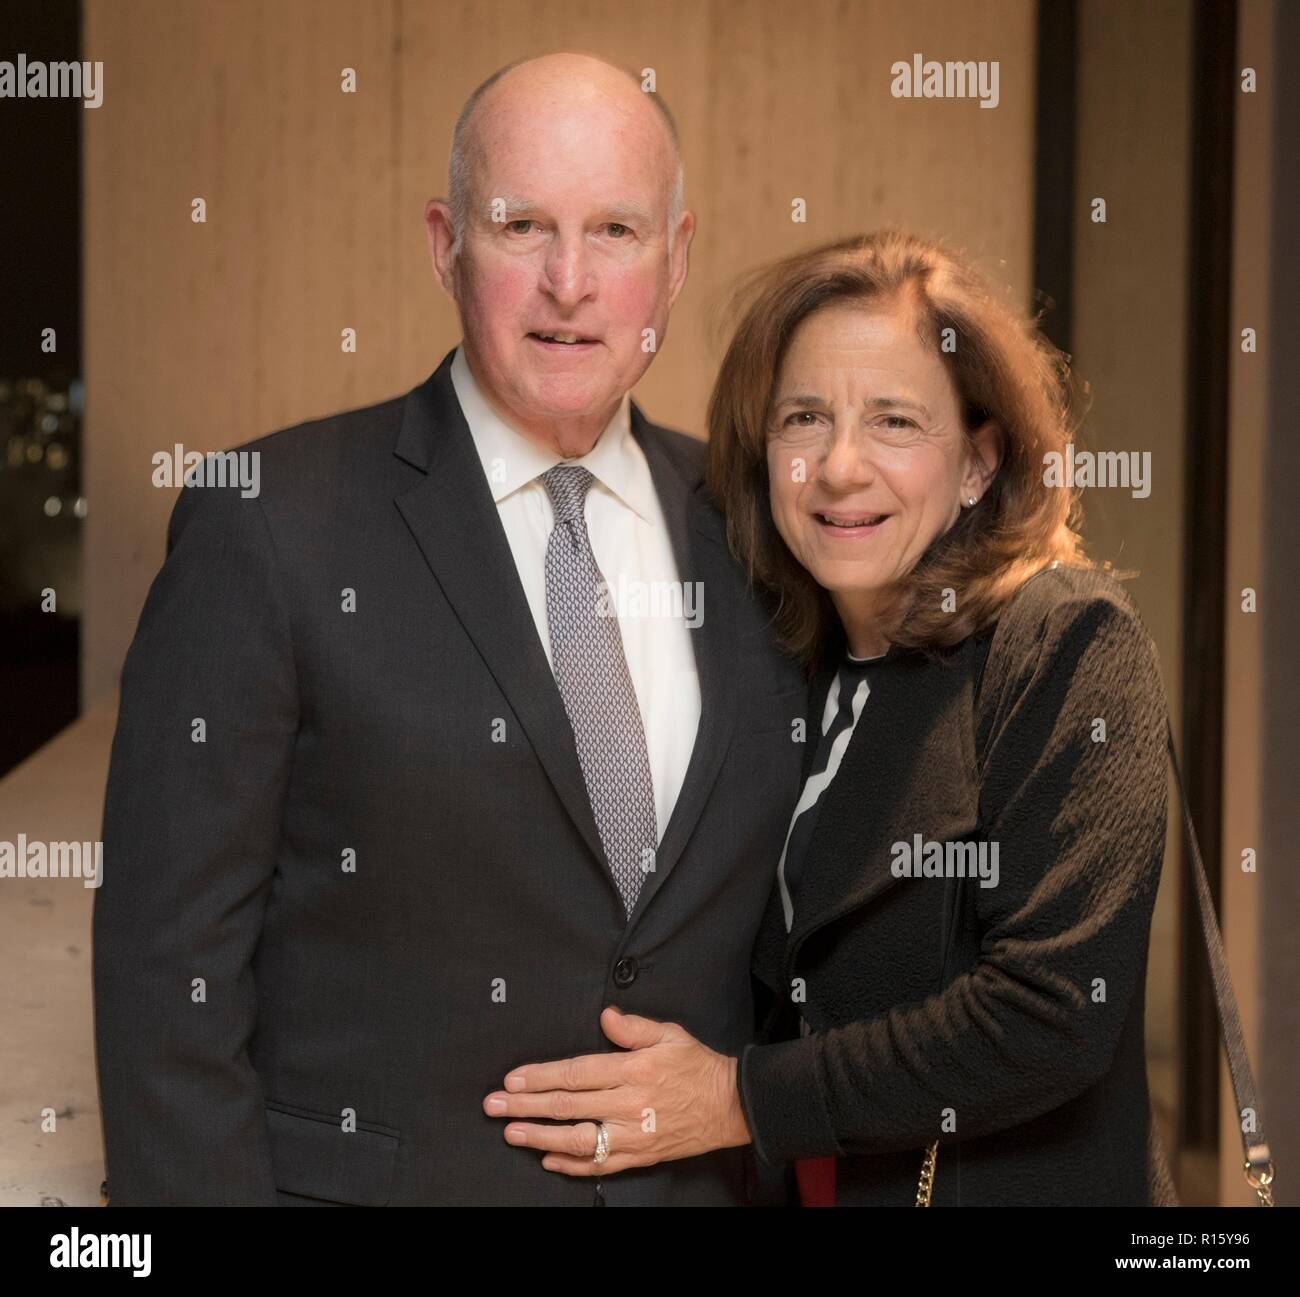 Le gouverneur de la Californie Jerry Brown et son épouse Anne Gust Brown lors de la LBJ Presidential Library, le 7 novembre 2018 à Austin, Texas. Brown termine son quatrième mandat en tant que gouverneur de Californie. Banque D'Images